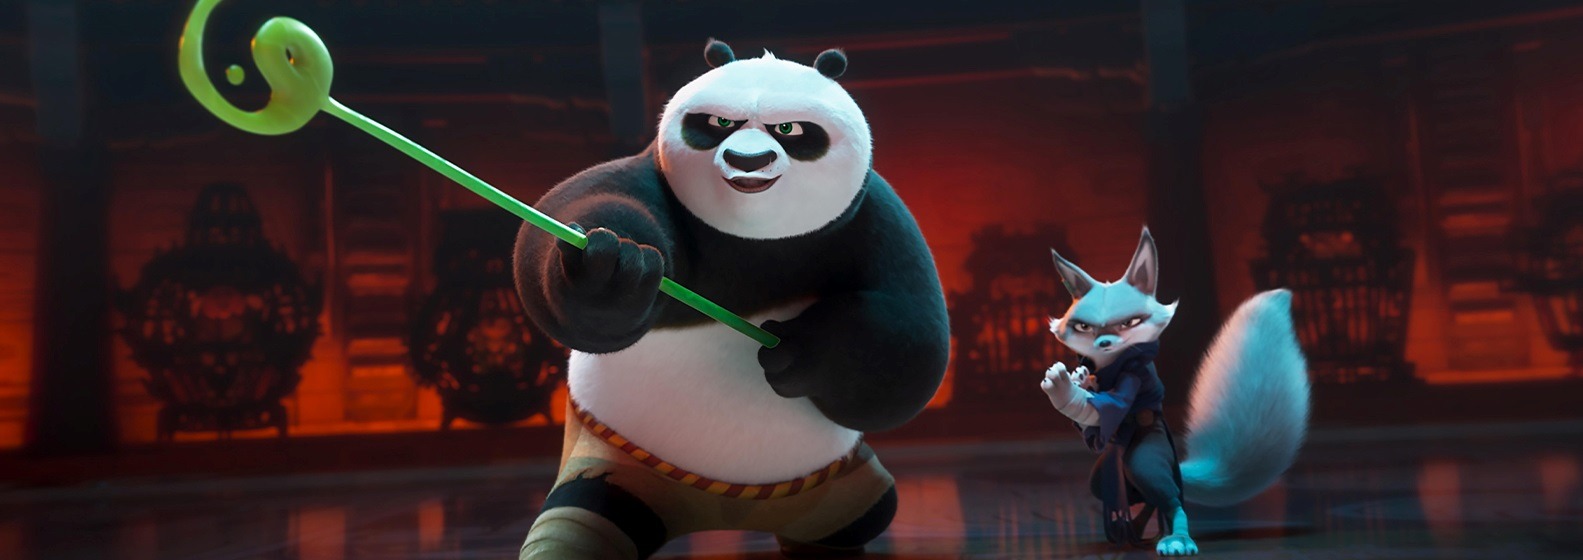 Kung Fu Panda 4 - Header Image